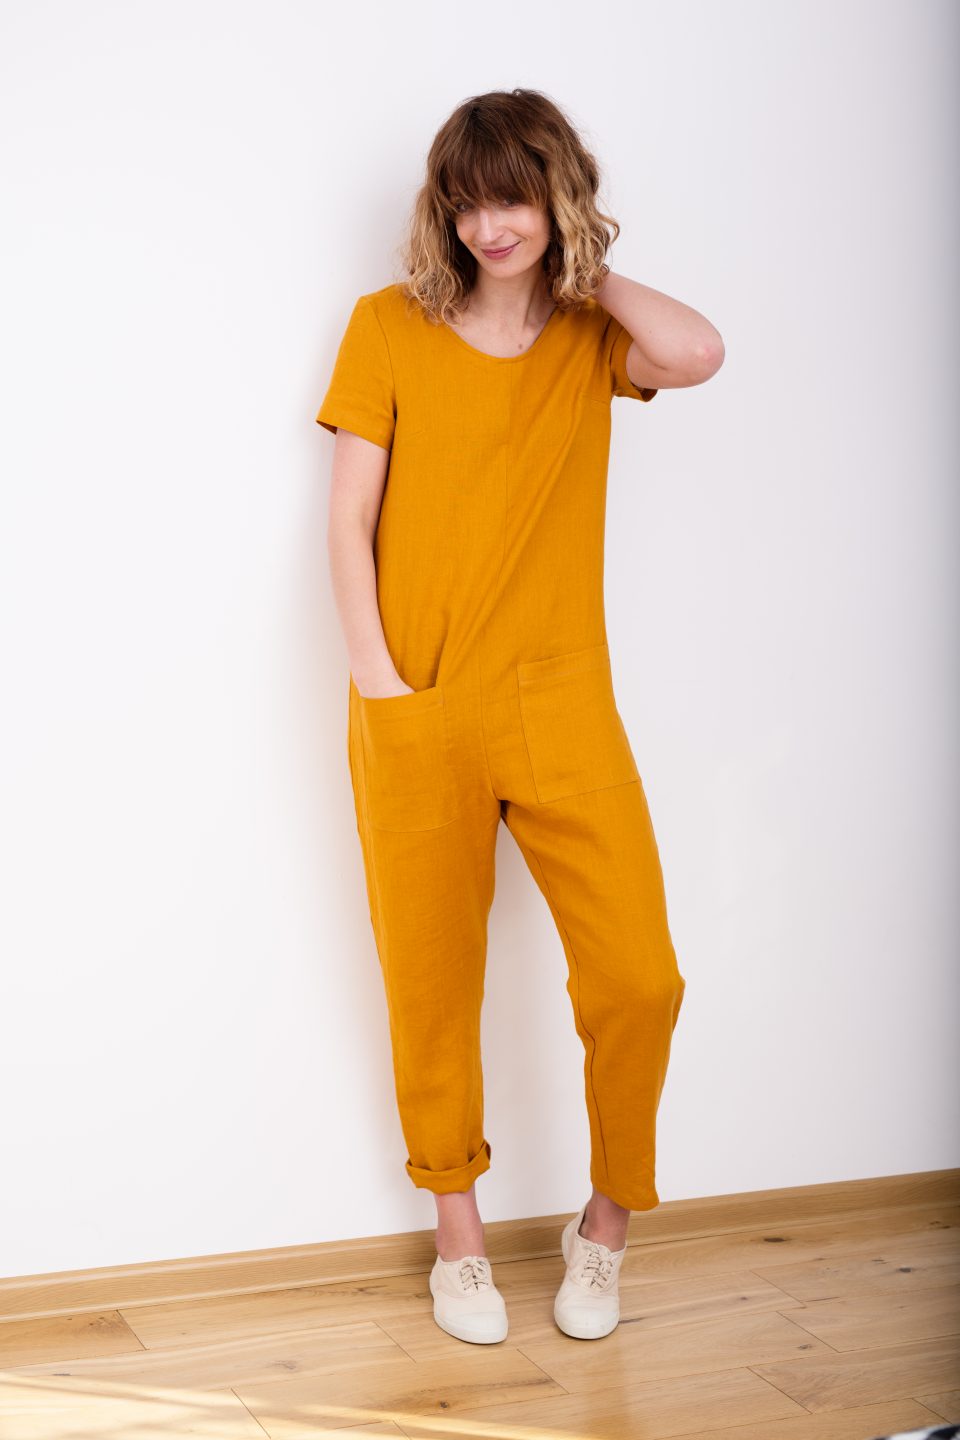 Rust Orange Jumpsuit - Button-Front Jumpsuit - Linen Jumpsuit - Lulus